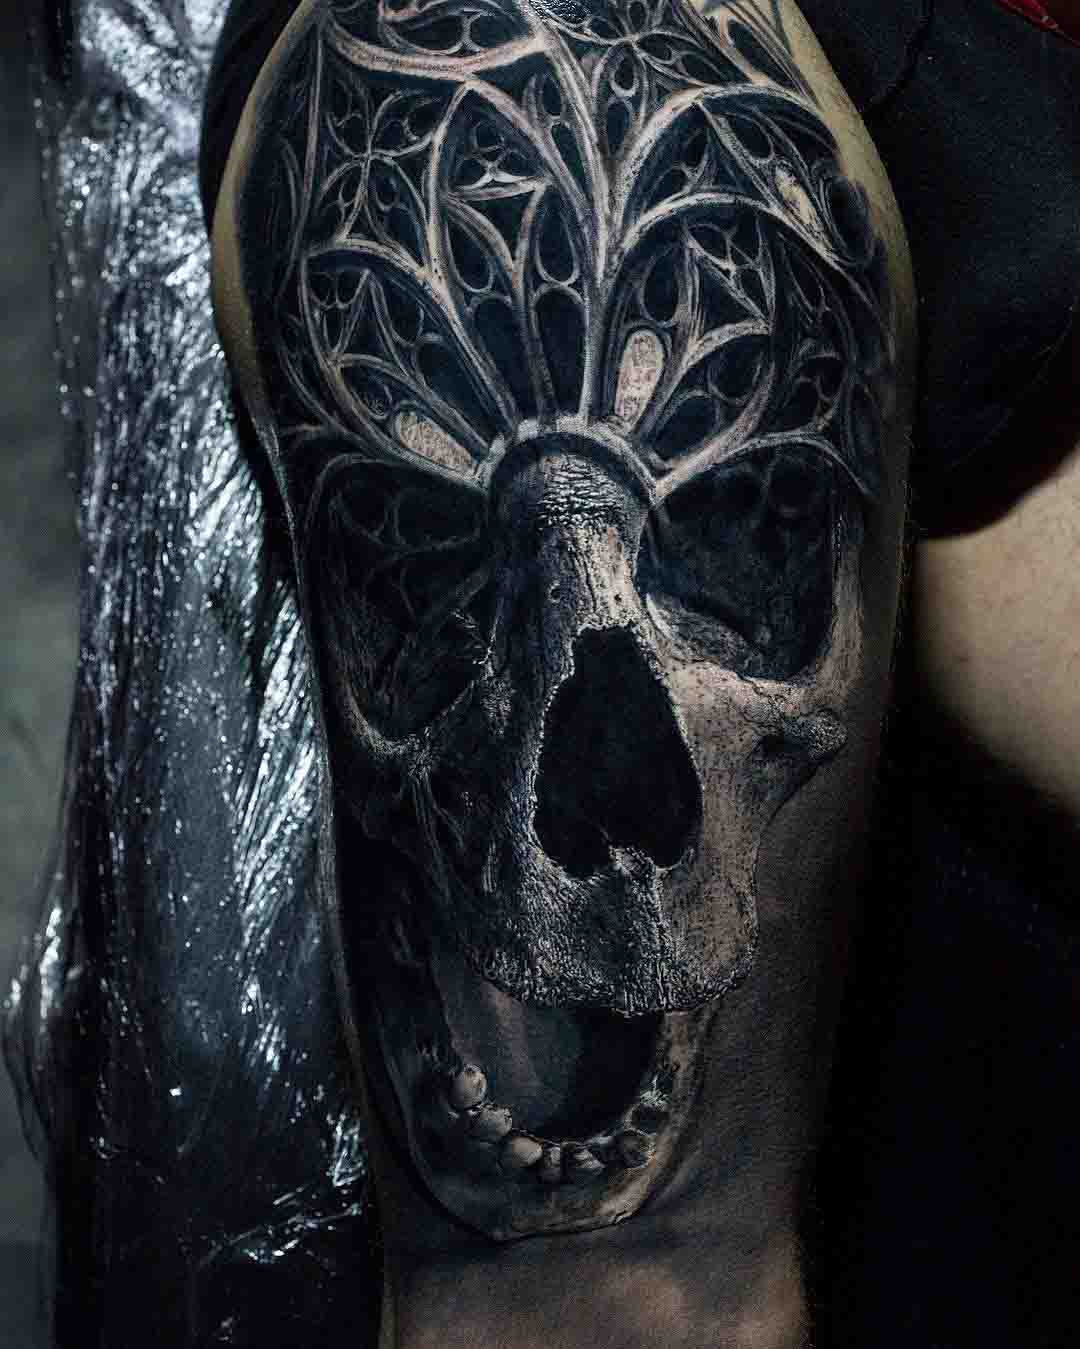 The Old Soul Tattoo Skull - Best Tattoo Ideas Gallery